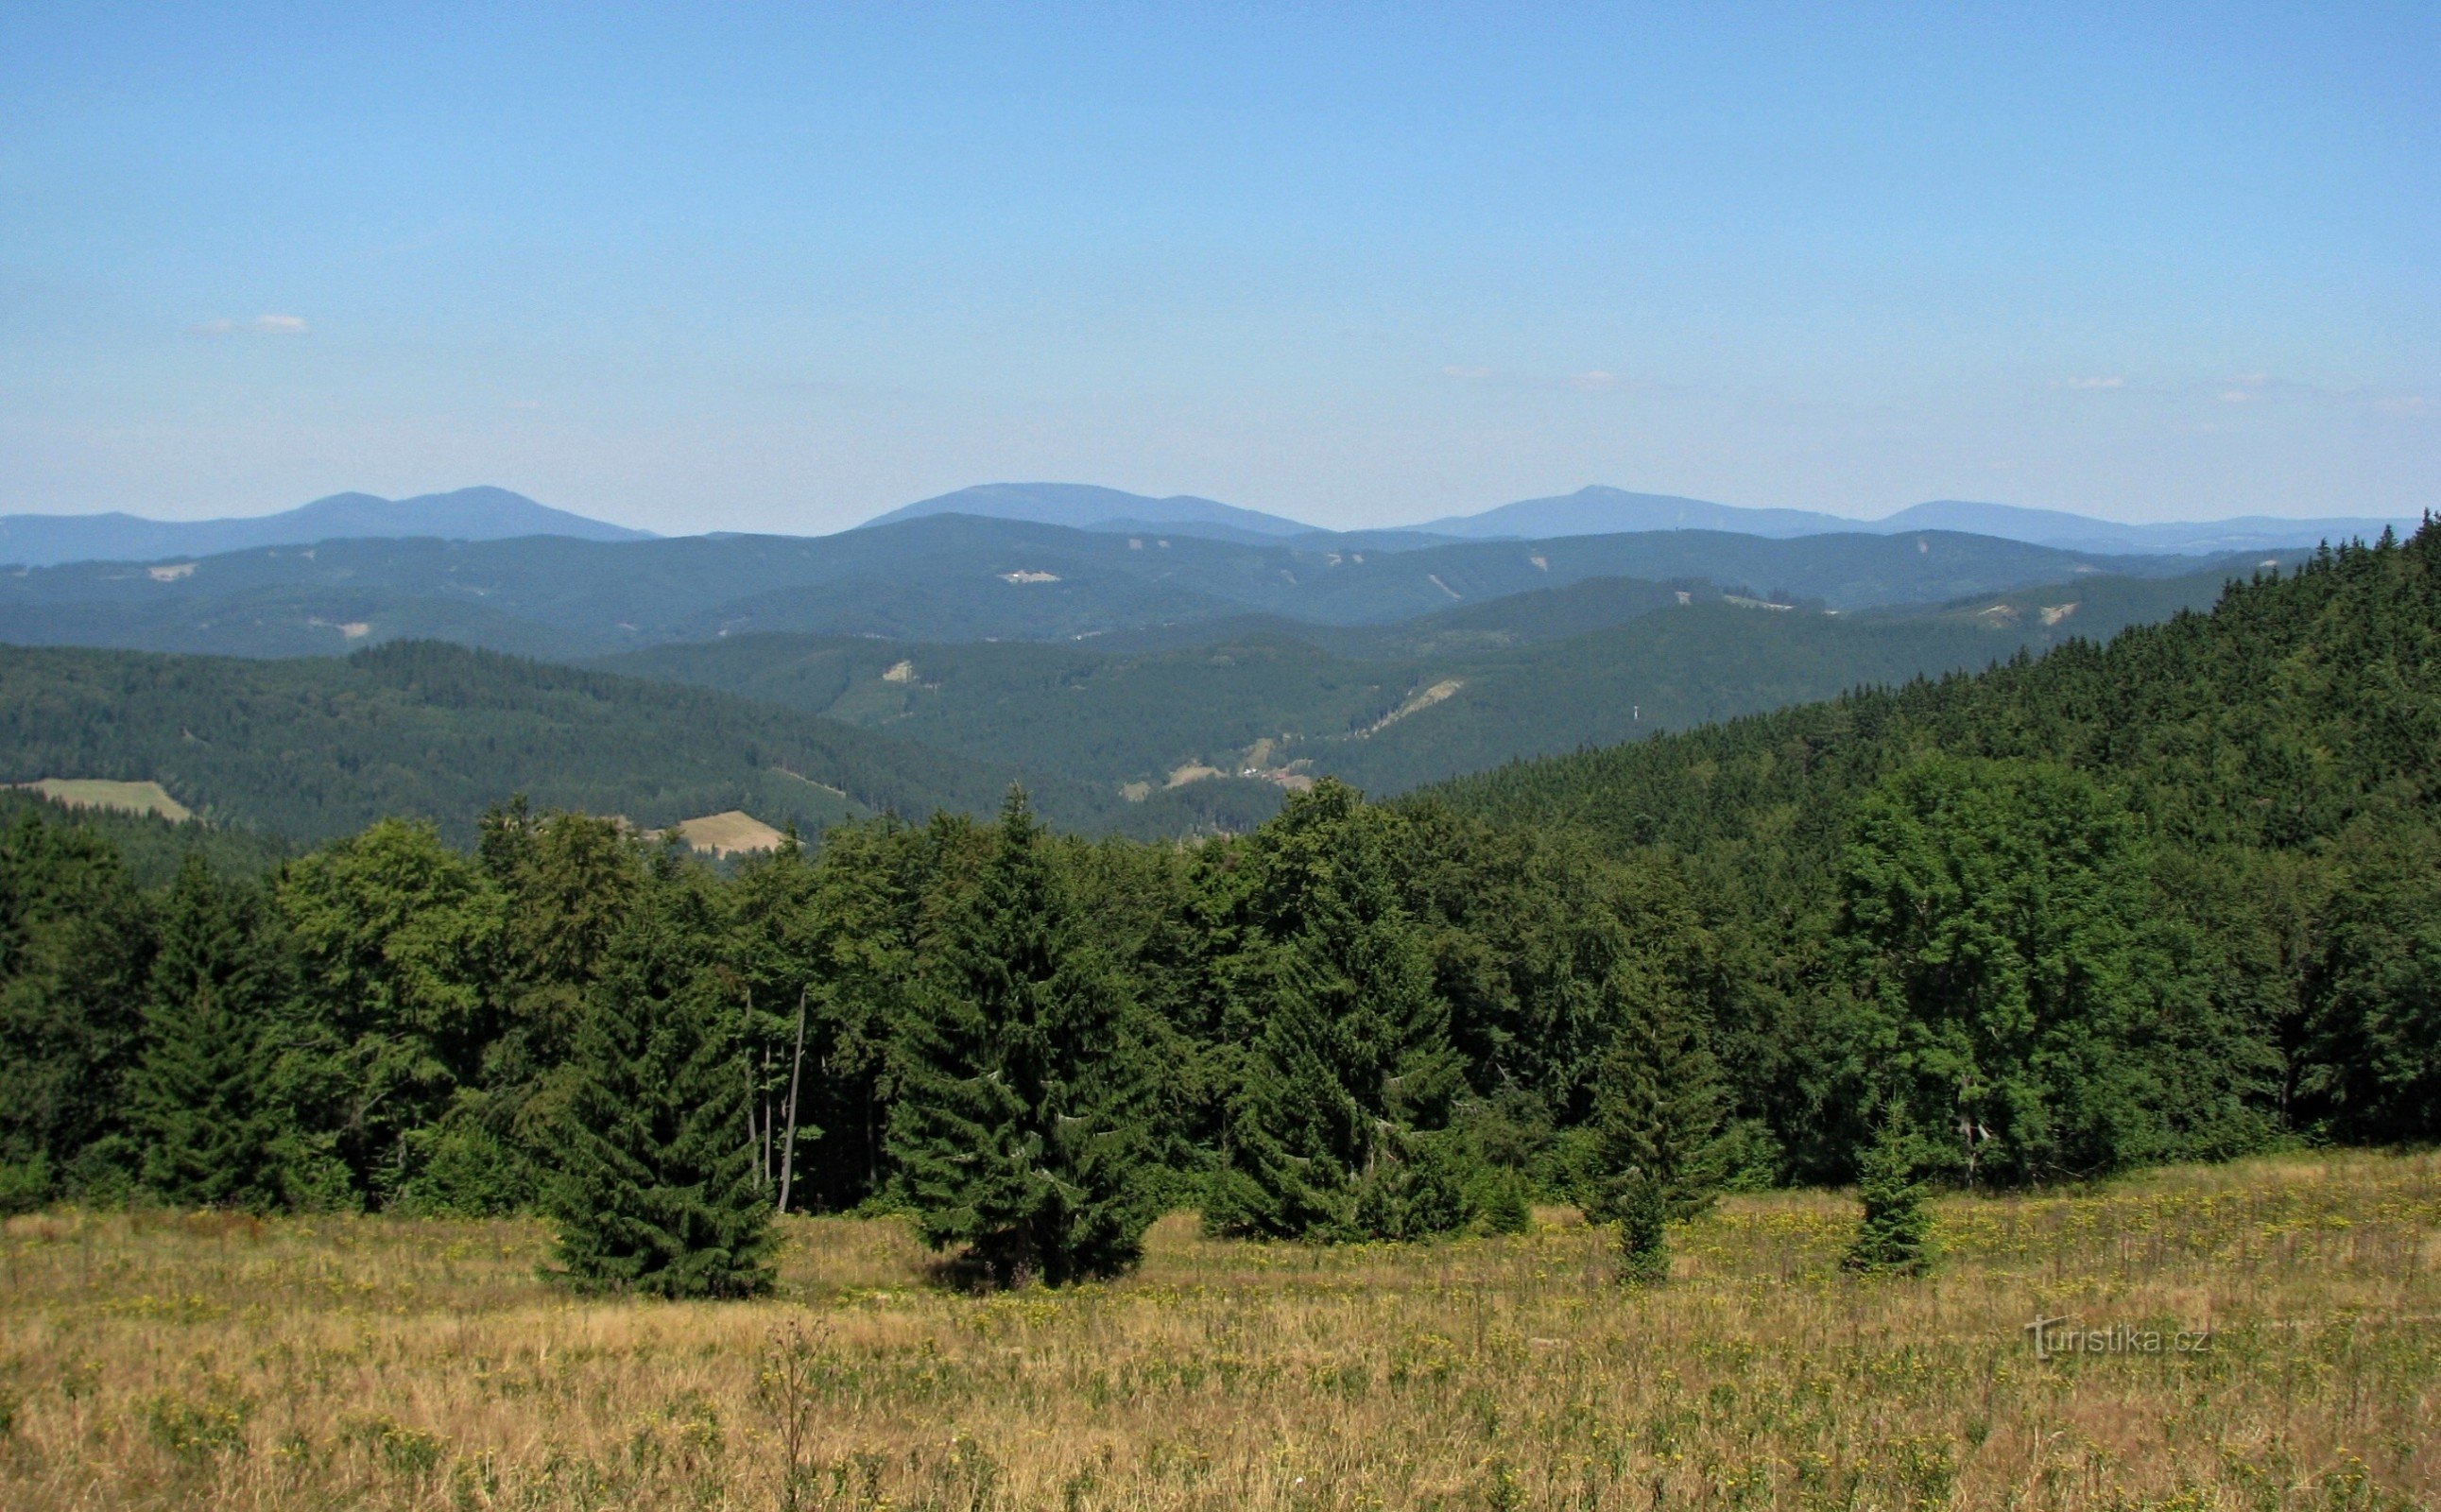 Javorníky: panorama of the Beskydy Mountains from Veľký Javorník